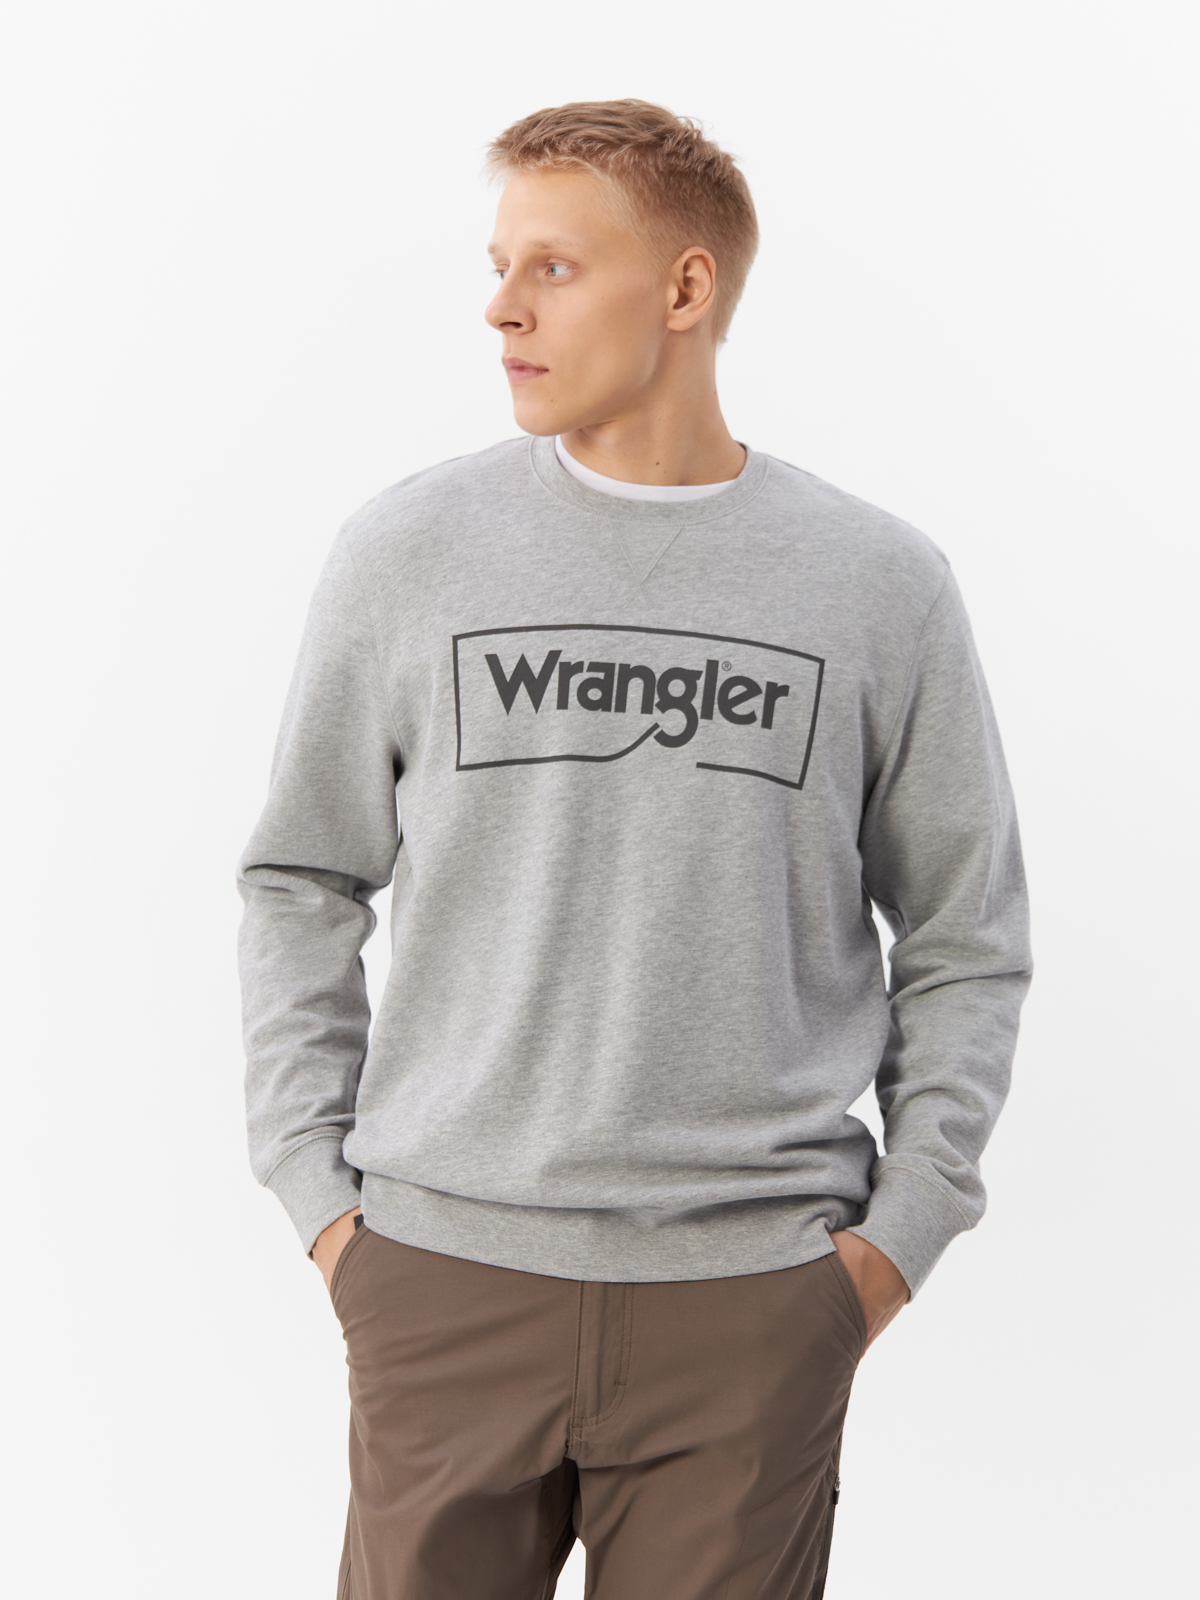 Свитшот мужской Wrangler WRANGLER серый 2XL - купить в Мегамаркет Москва, цена на Мегамаркет